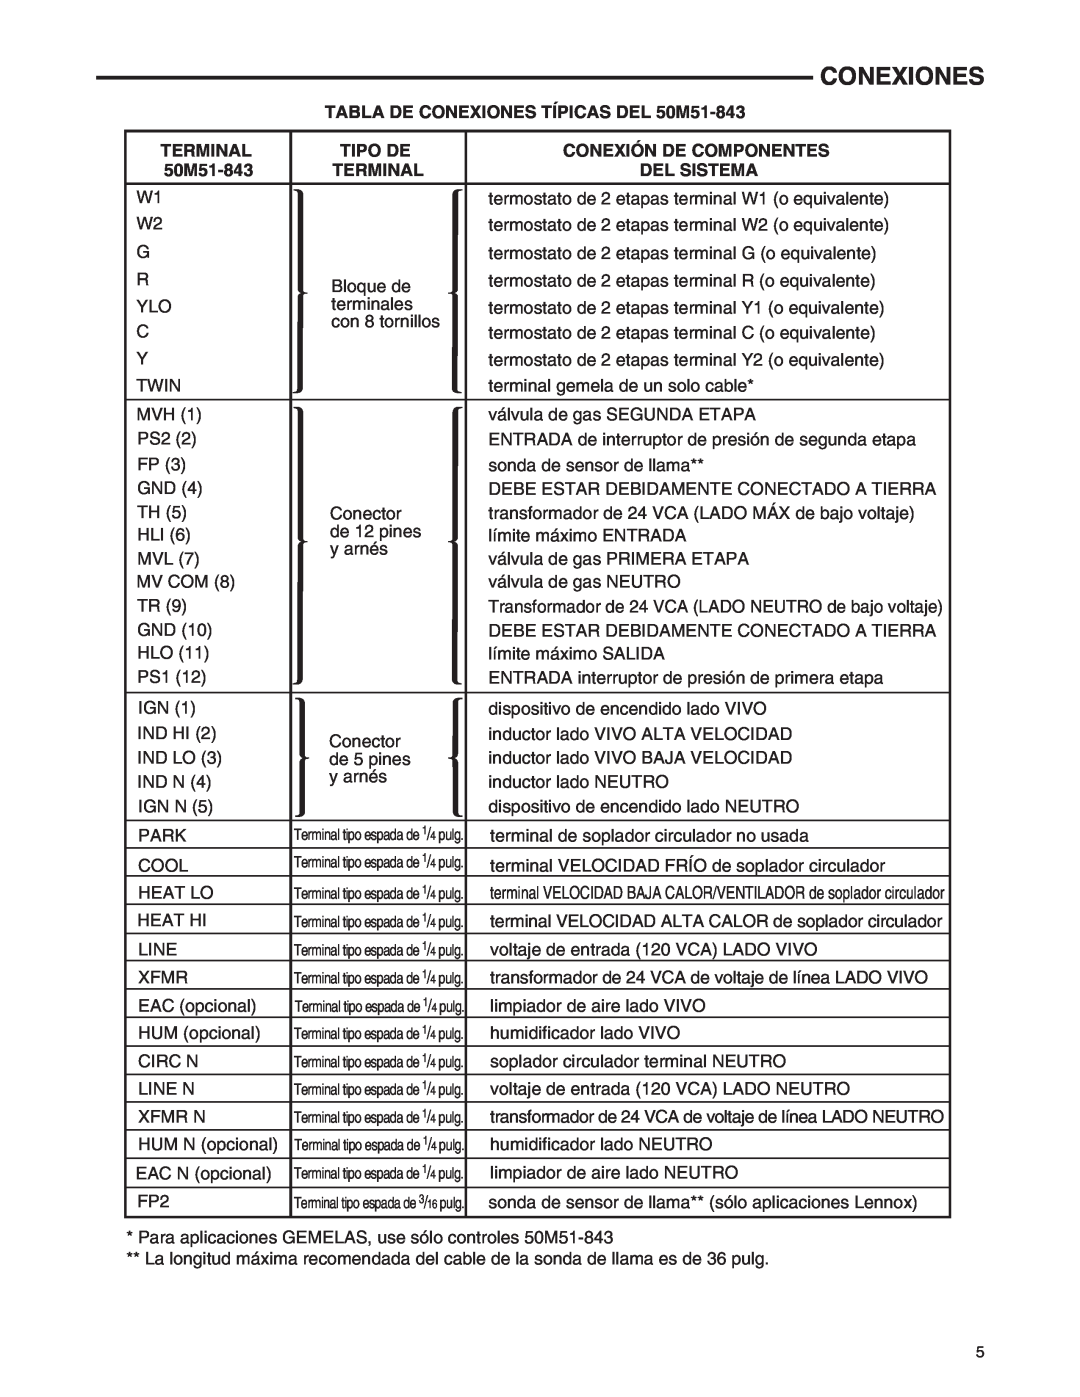 White Rodgers 21M51U-843 manual Conexiones, Terminal, Tipo De, Conexión De Componentes, Del Sistema, 50M51-843 